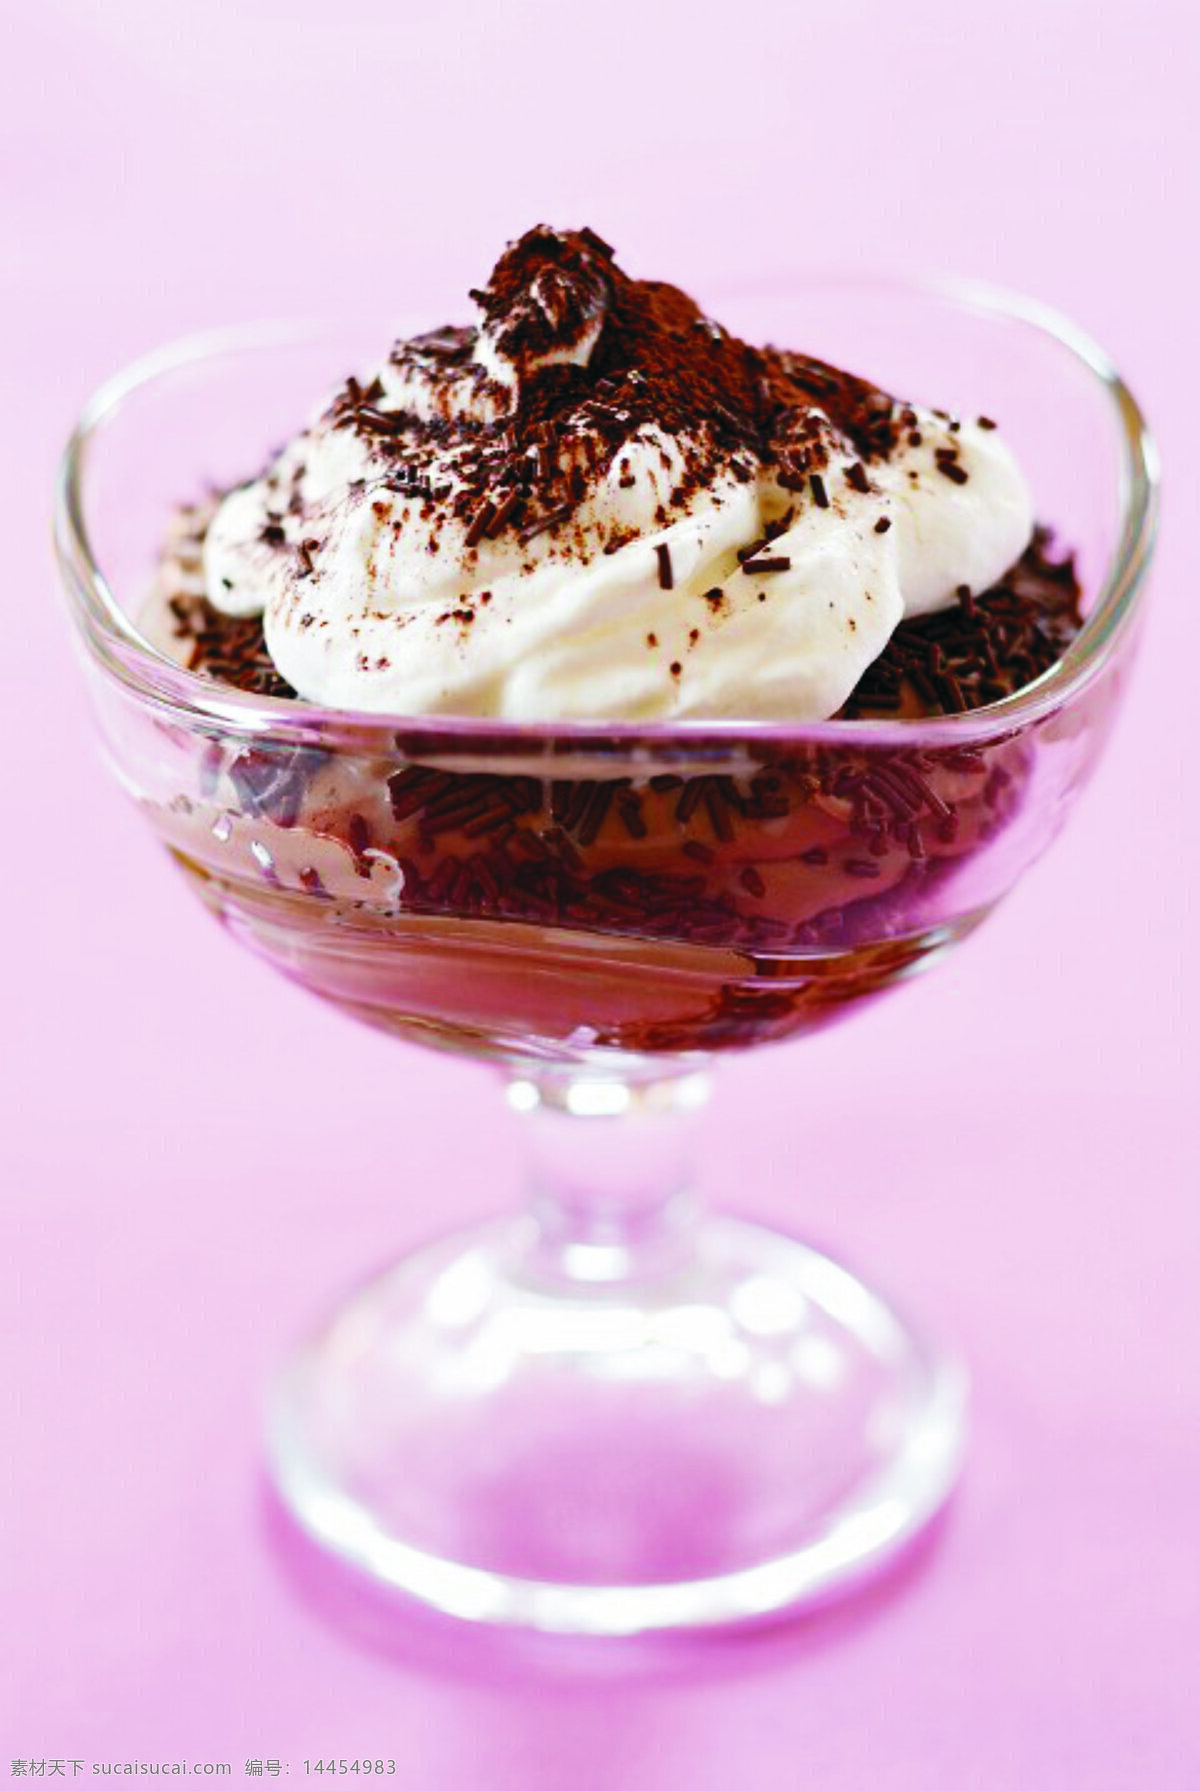 花式冰淇淋 花式 冰淇淋 高档杯 透明色 巧克力 芝麻 香瓜子 奶油 脆皮 雪糕 粉红色背景 餐饮美食